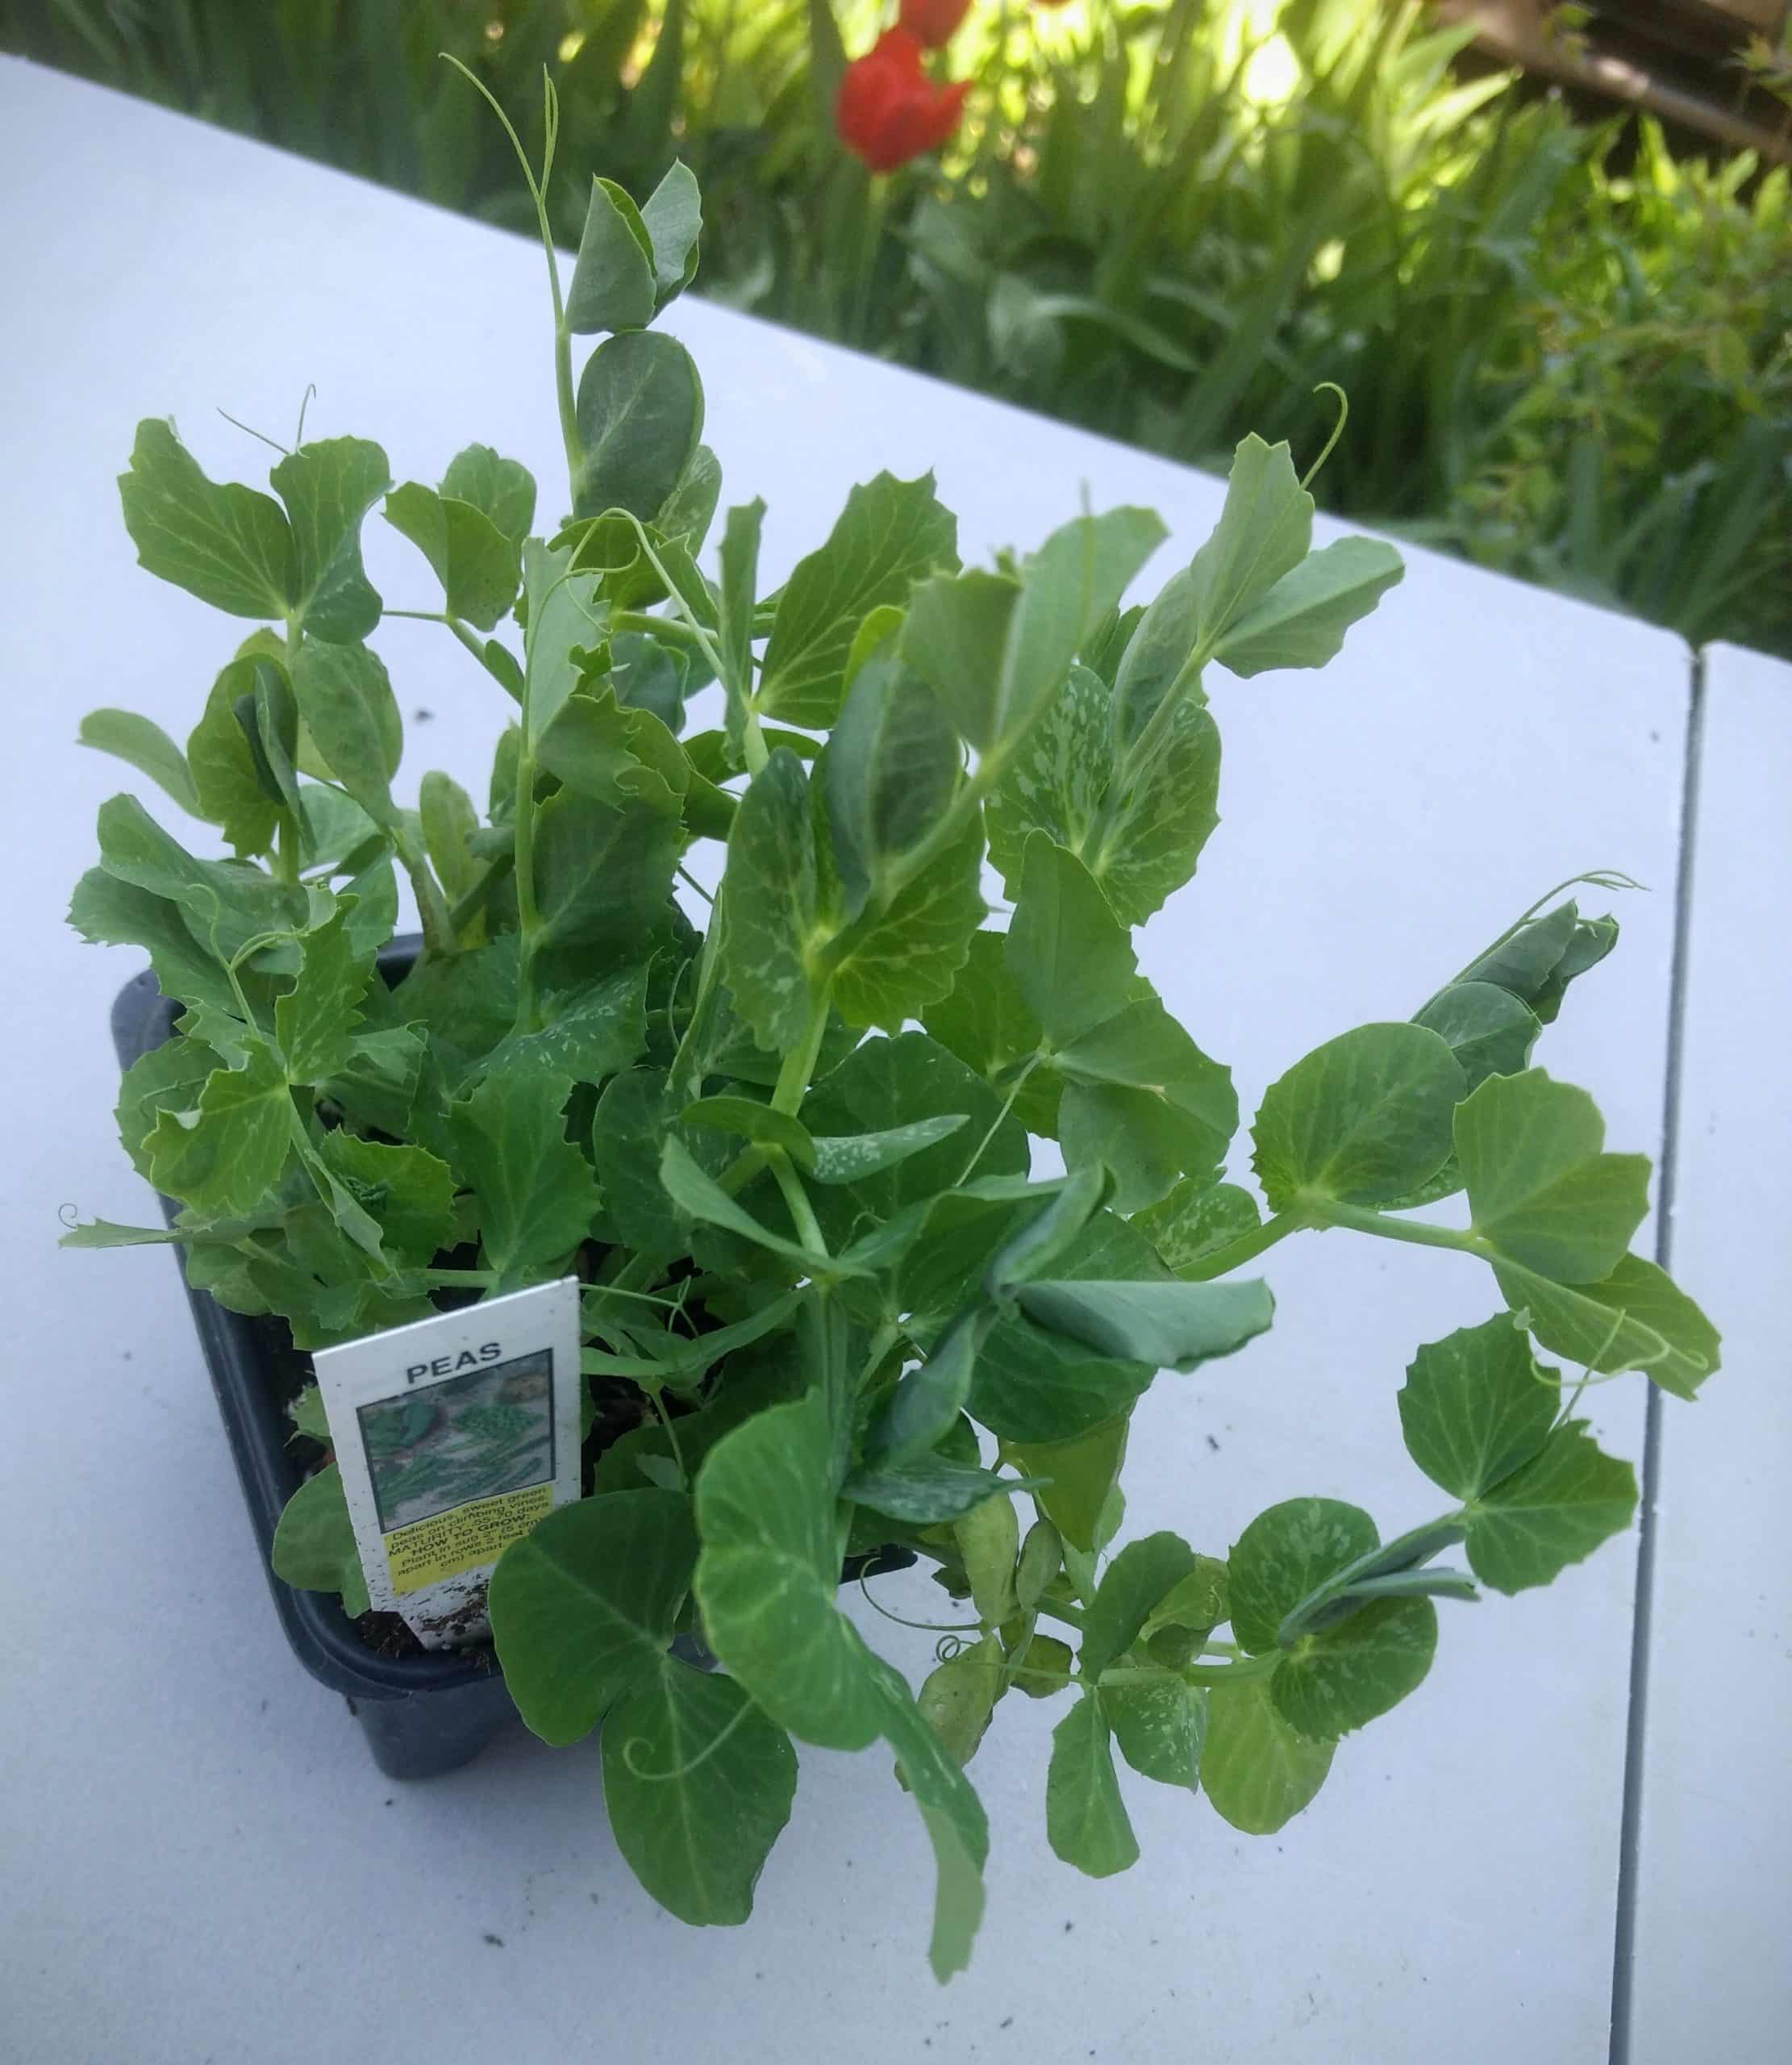 Sweet peas seedlings